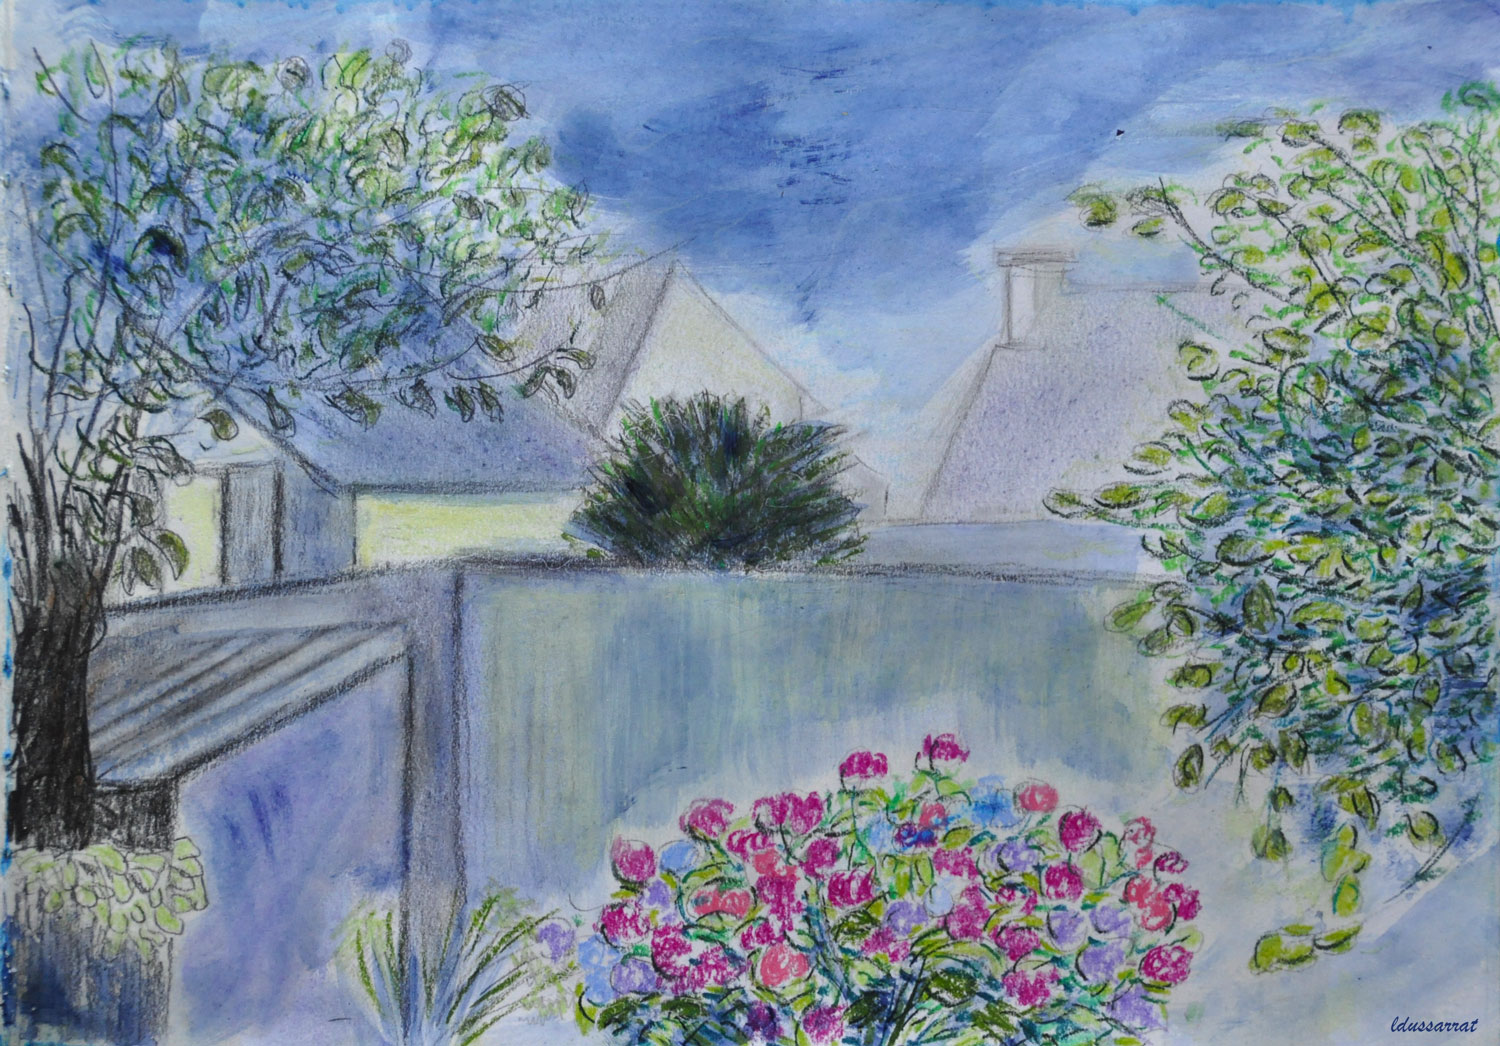 Le jardin, Beg-Meil. Crayon de couleur, pastel et huile sur papier, 21x29, 2021